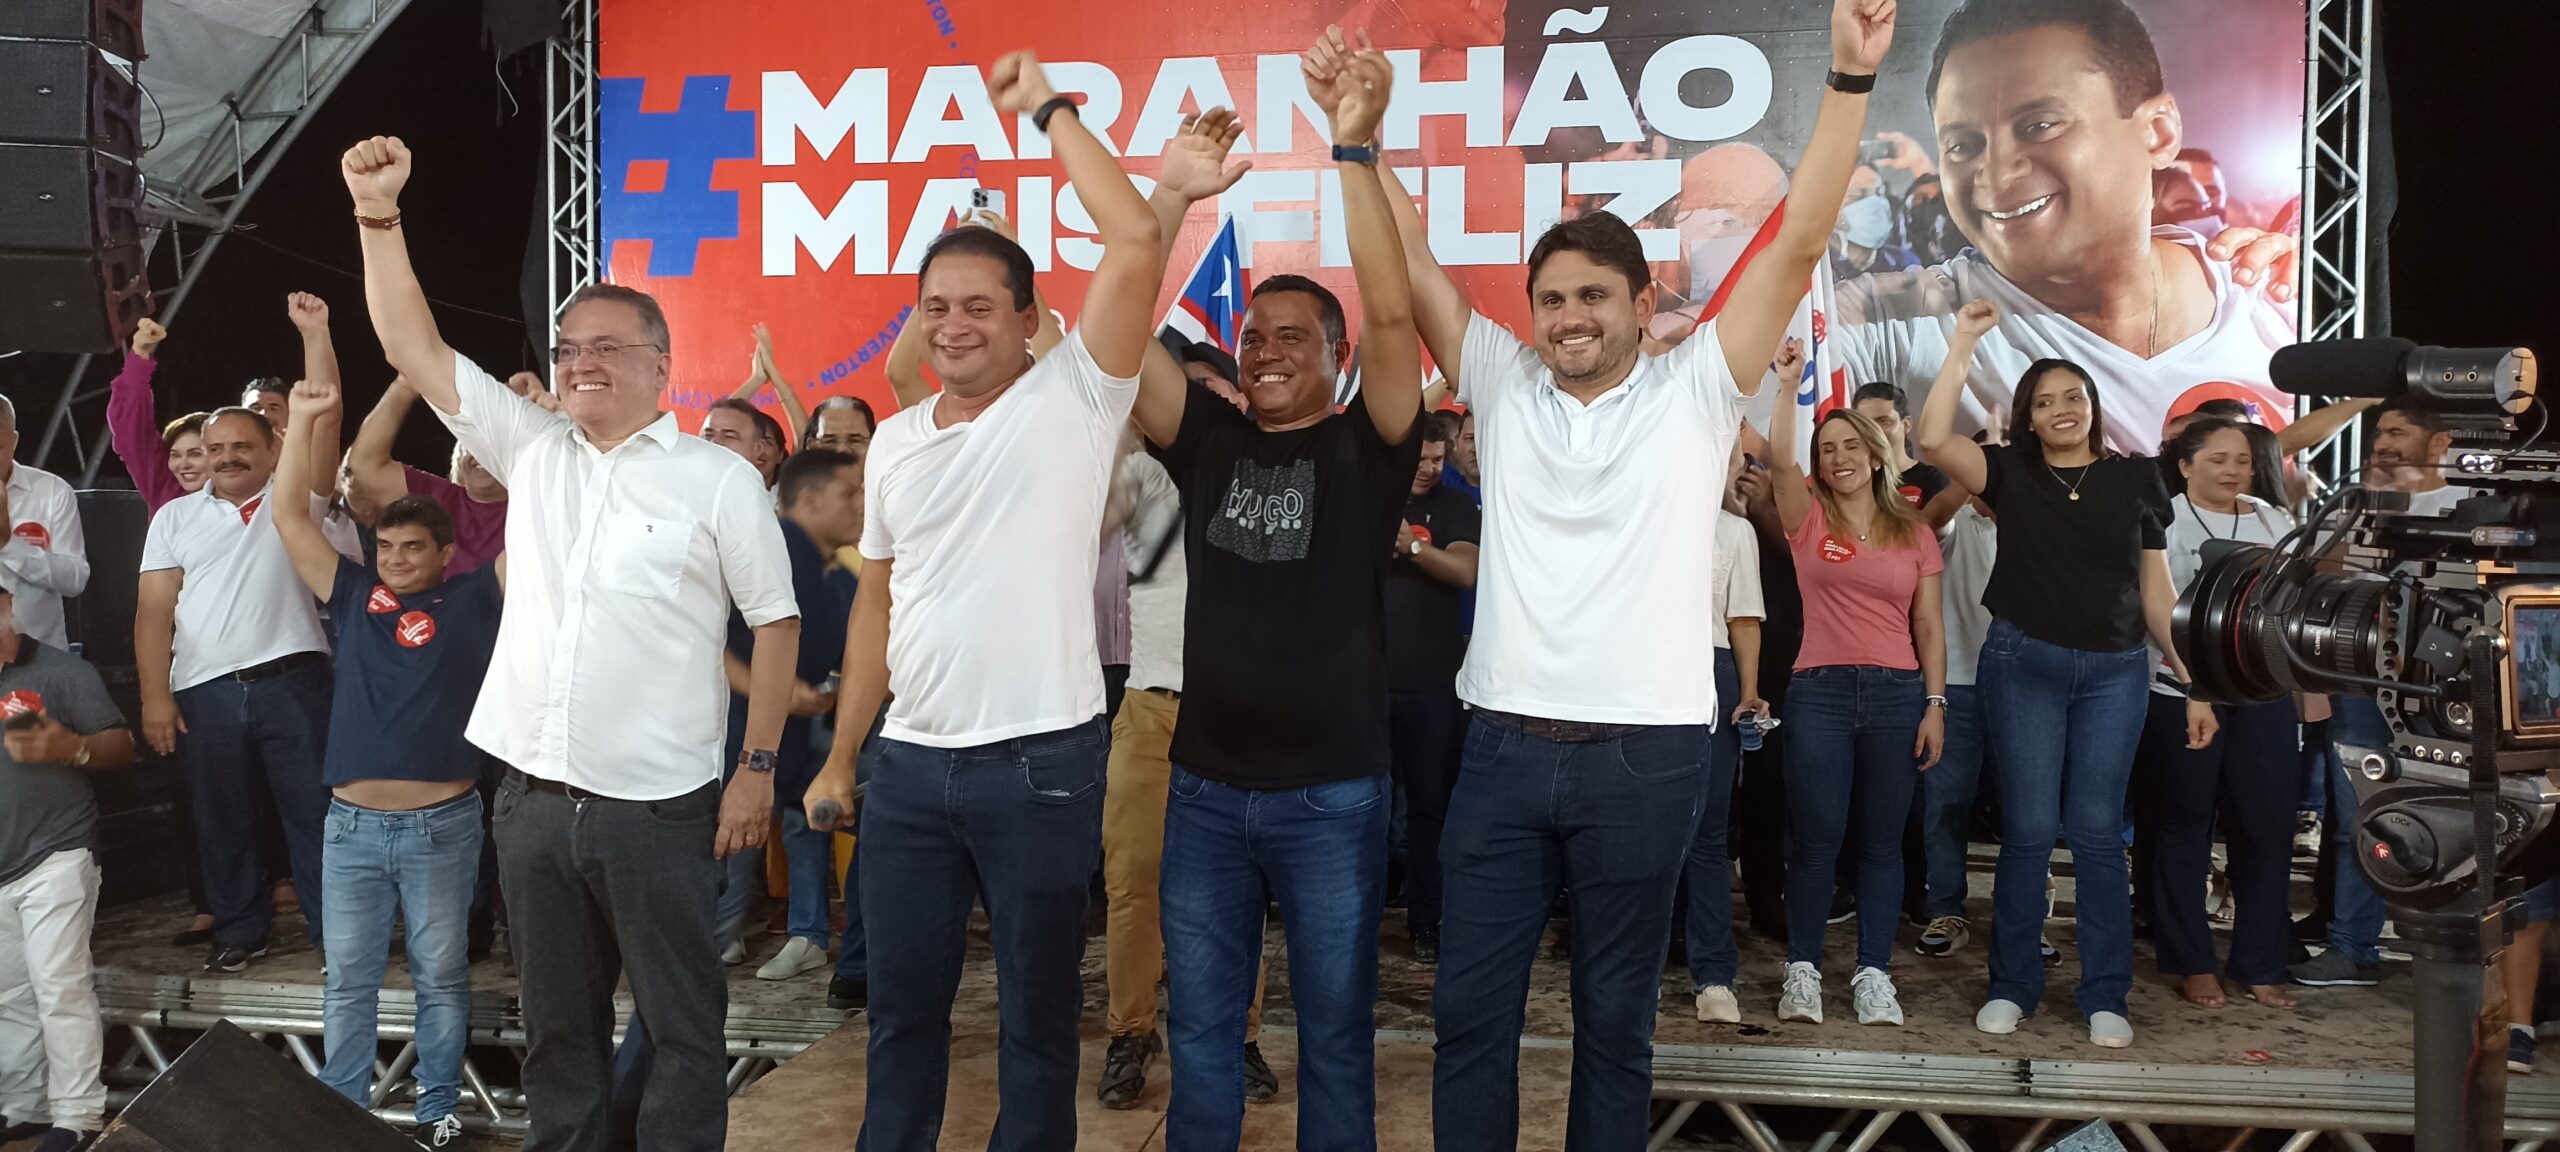 Humberto de Campos, reúne centenas pessoas no “Maranhão Mais Feliz”